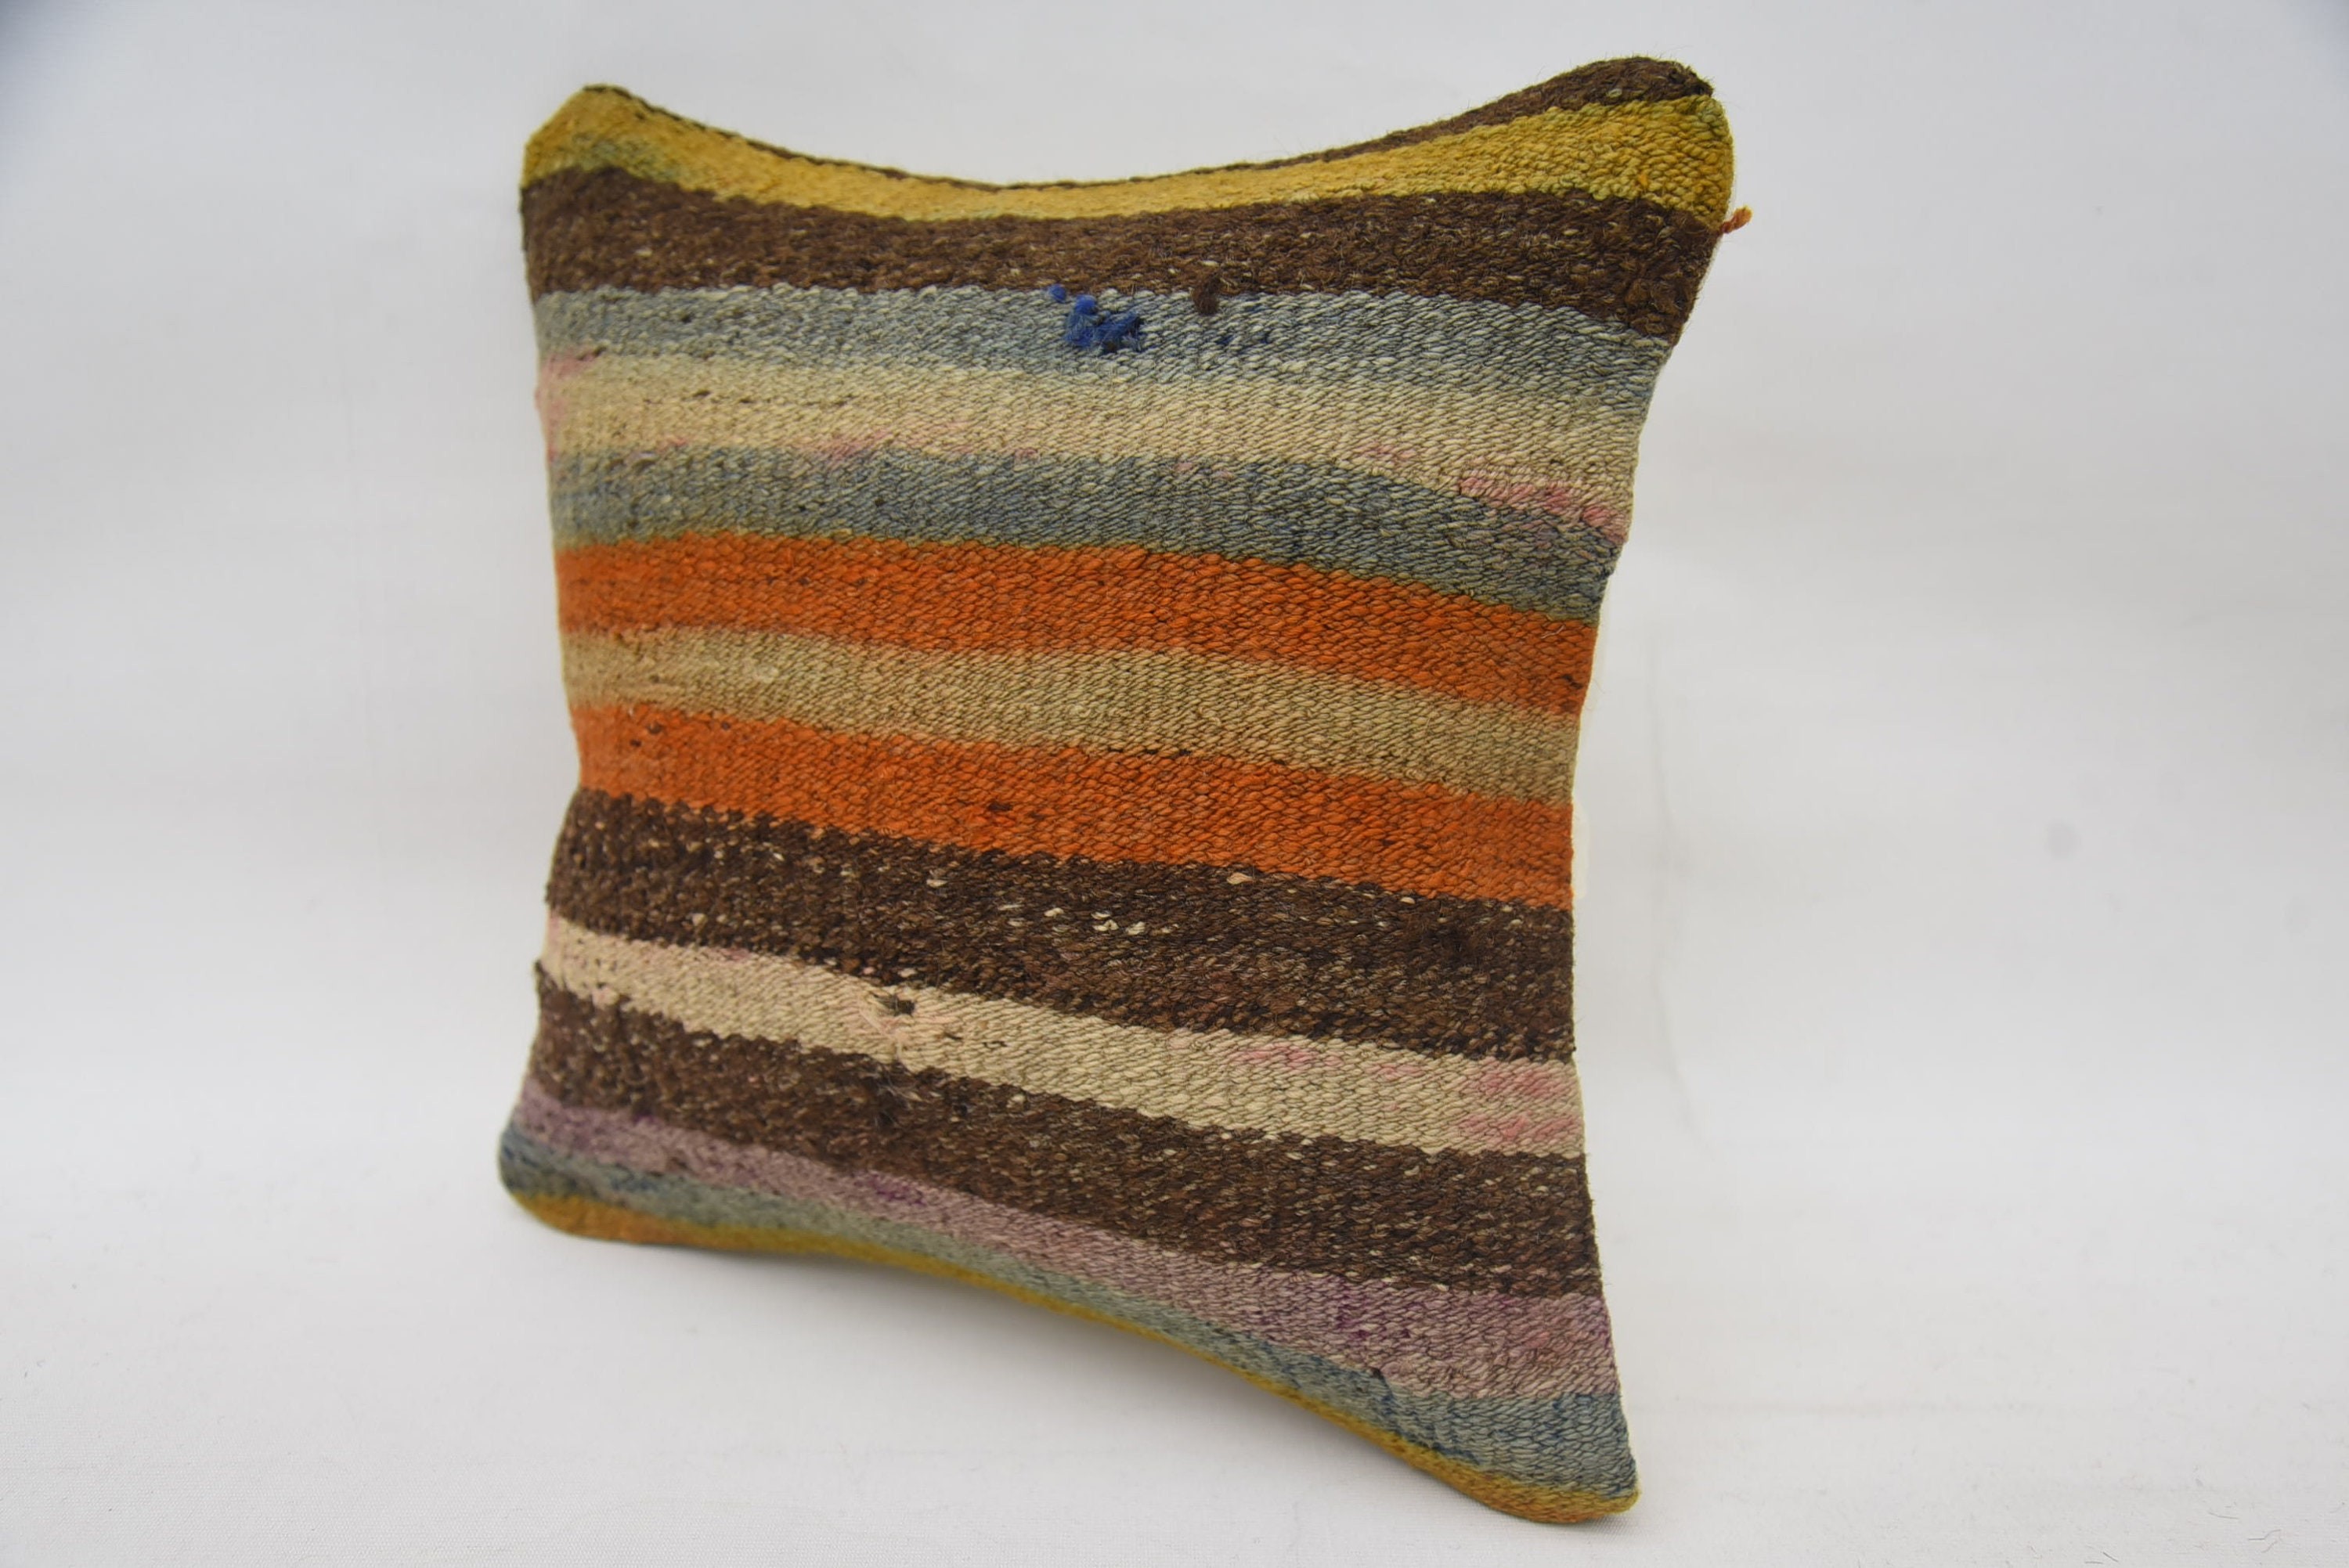 14"x14" Brown Pillow, Ethnical Kilim Rug Pillow, Wholesale Cushion, Vintage Kilim Throw Pillow, Pillow for Sofa